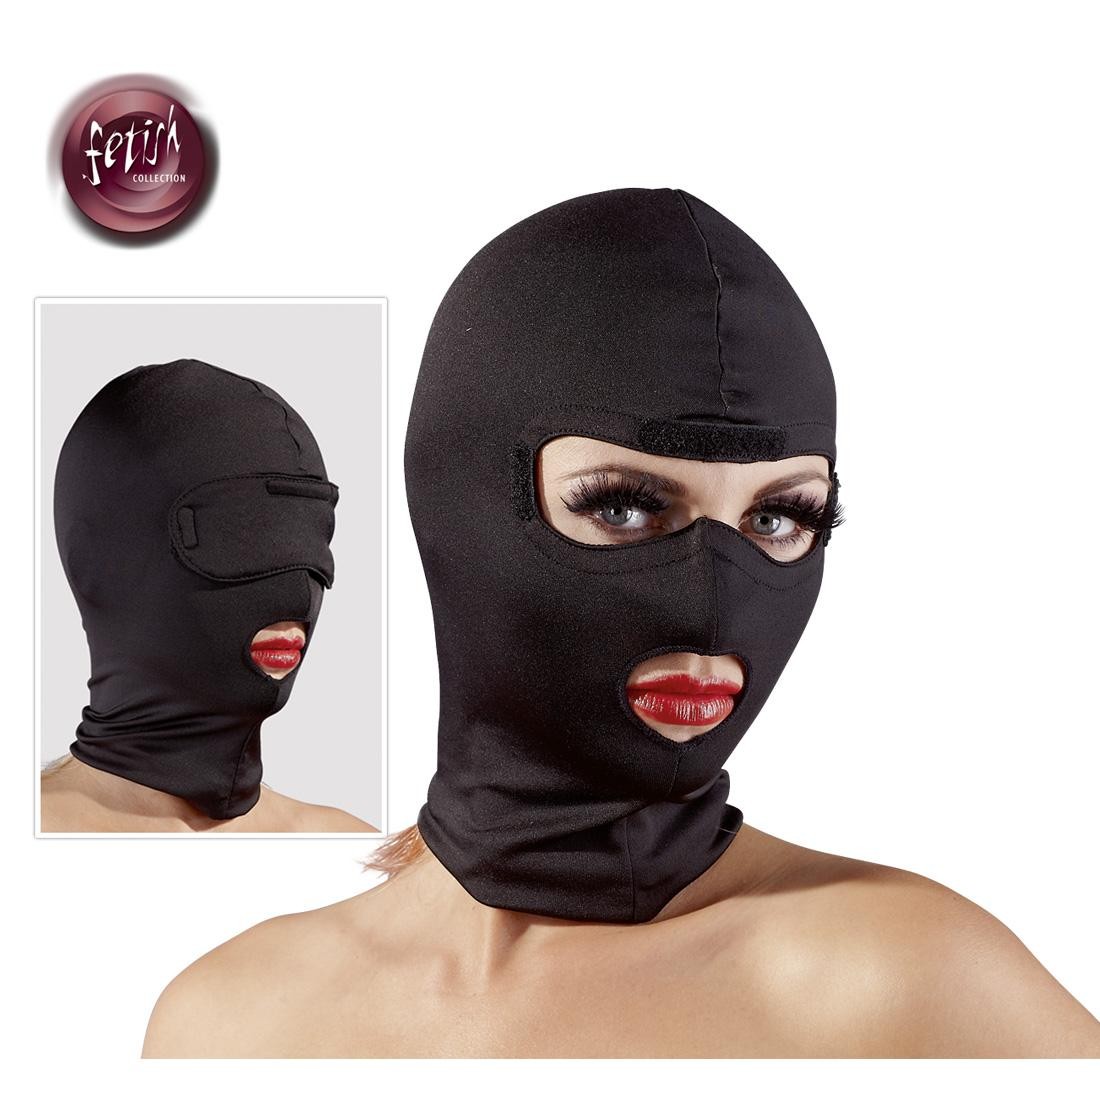  fetish  collection  -  Kopfmaske  mit  Augenklappe  -  schwarz 